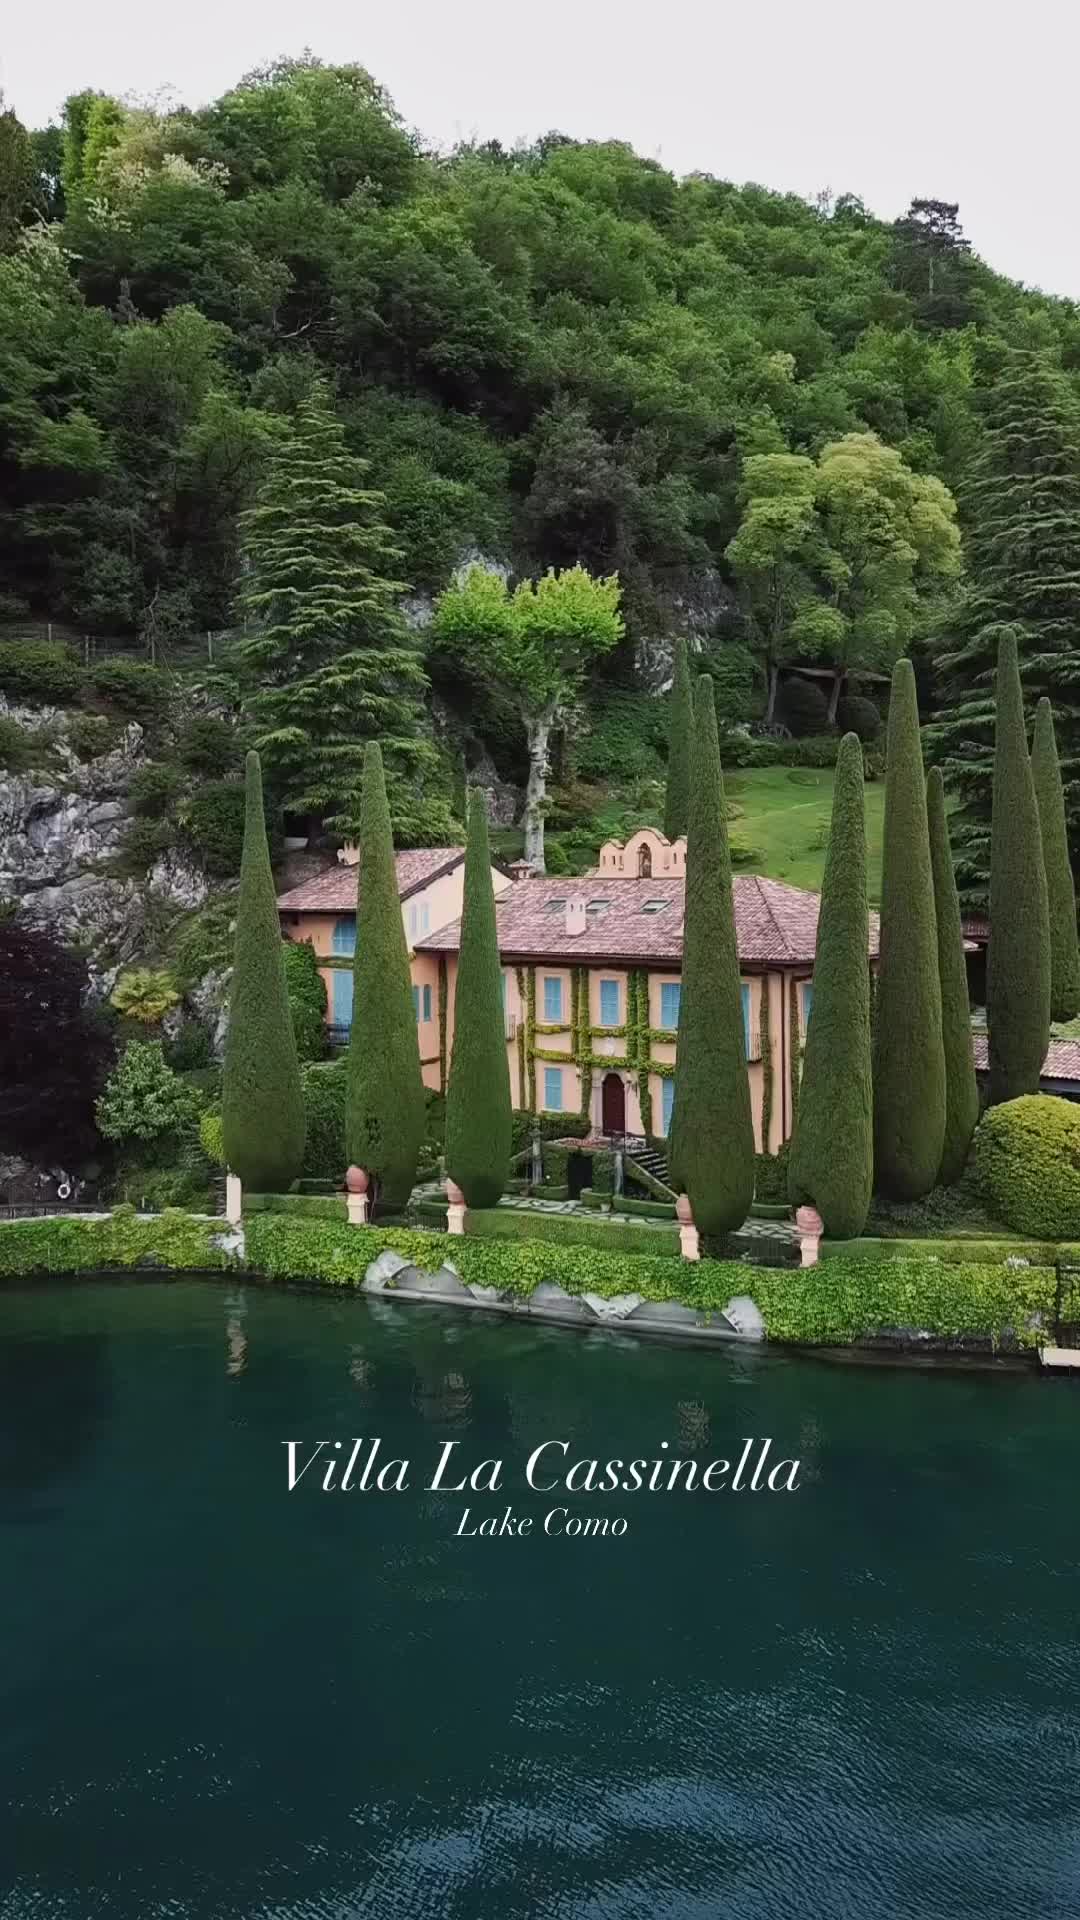 Dreamy Villa La Cassinella by Lake Como